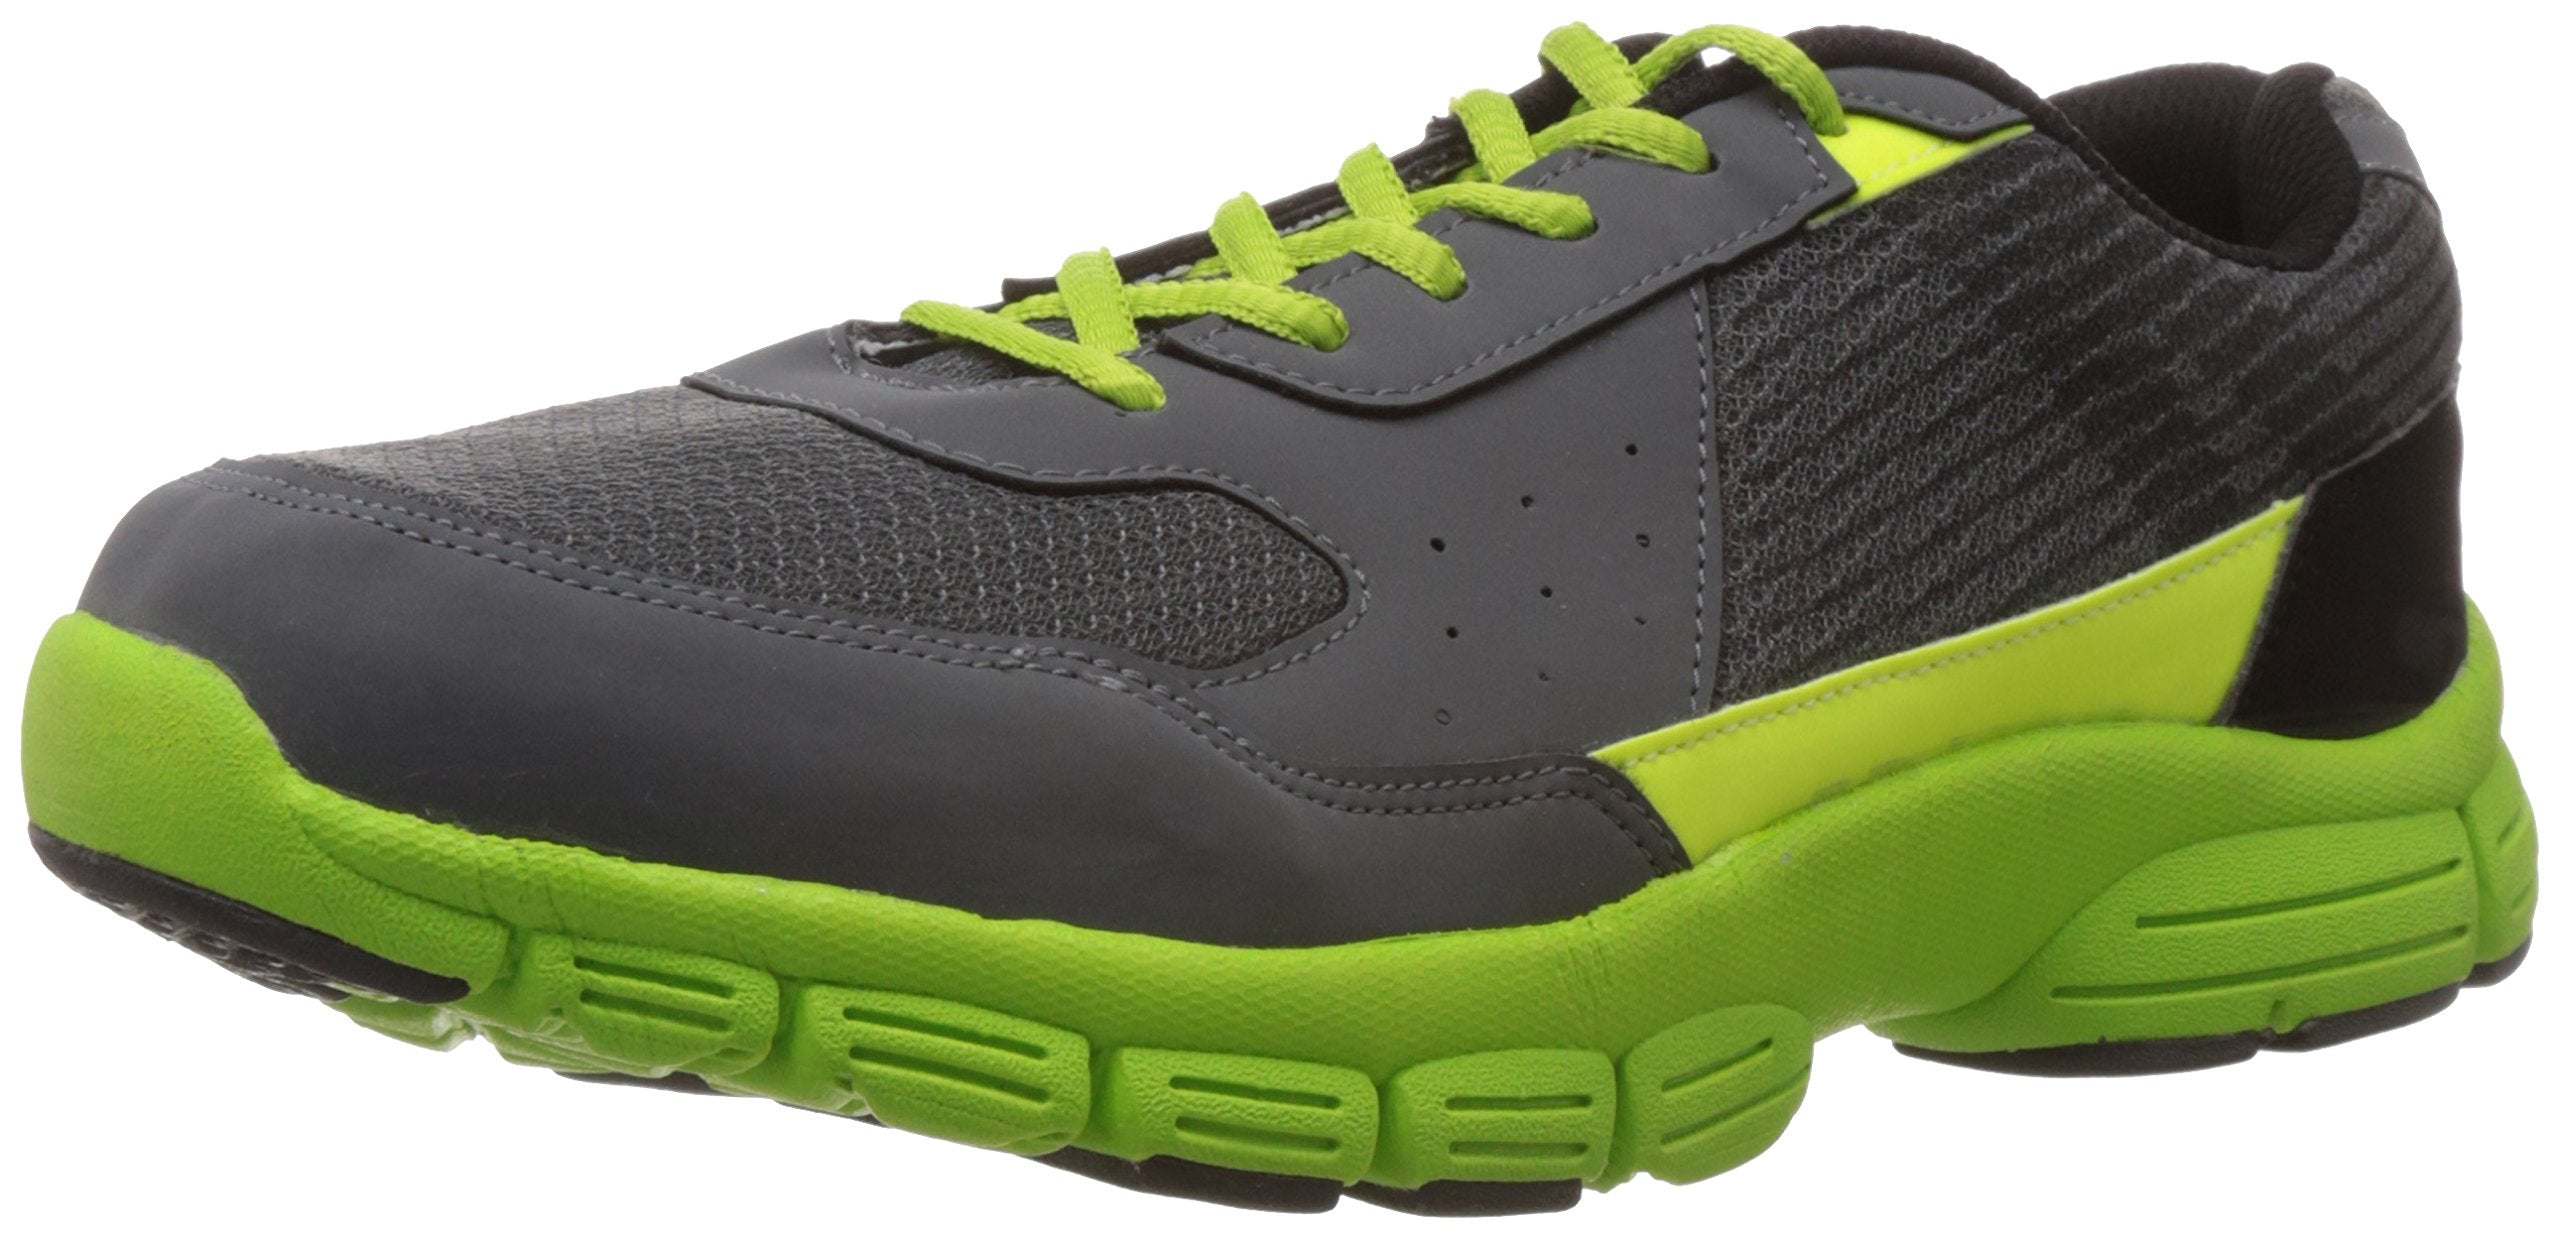 Vector X Rs 5013 Running Shoes, Men's UK 7 (Grey/Green)